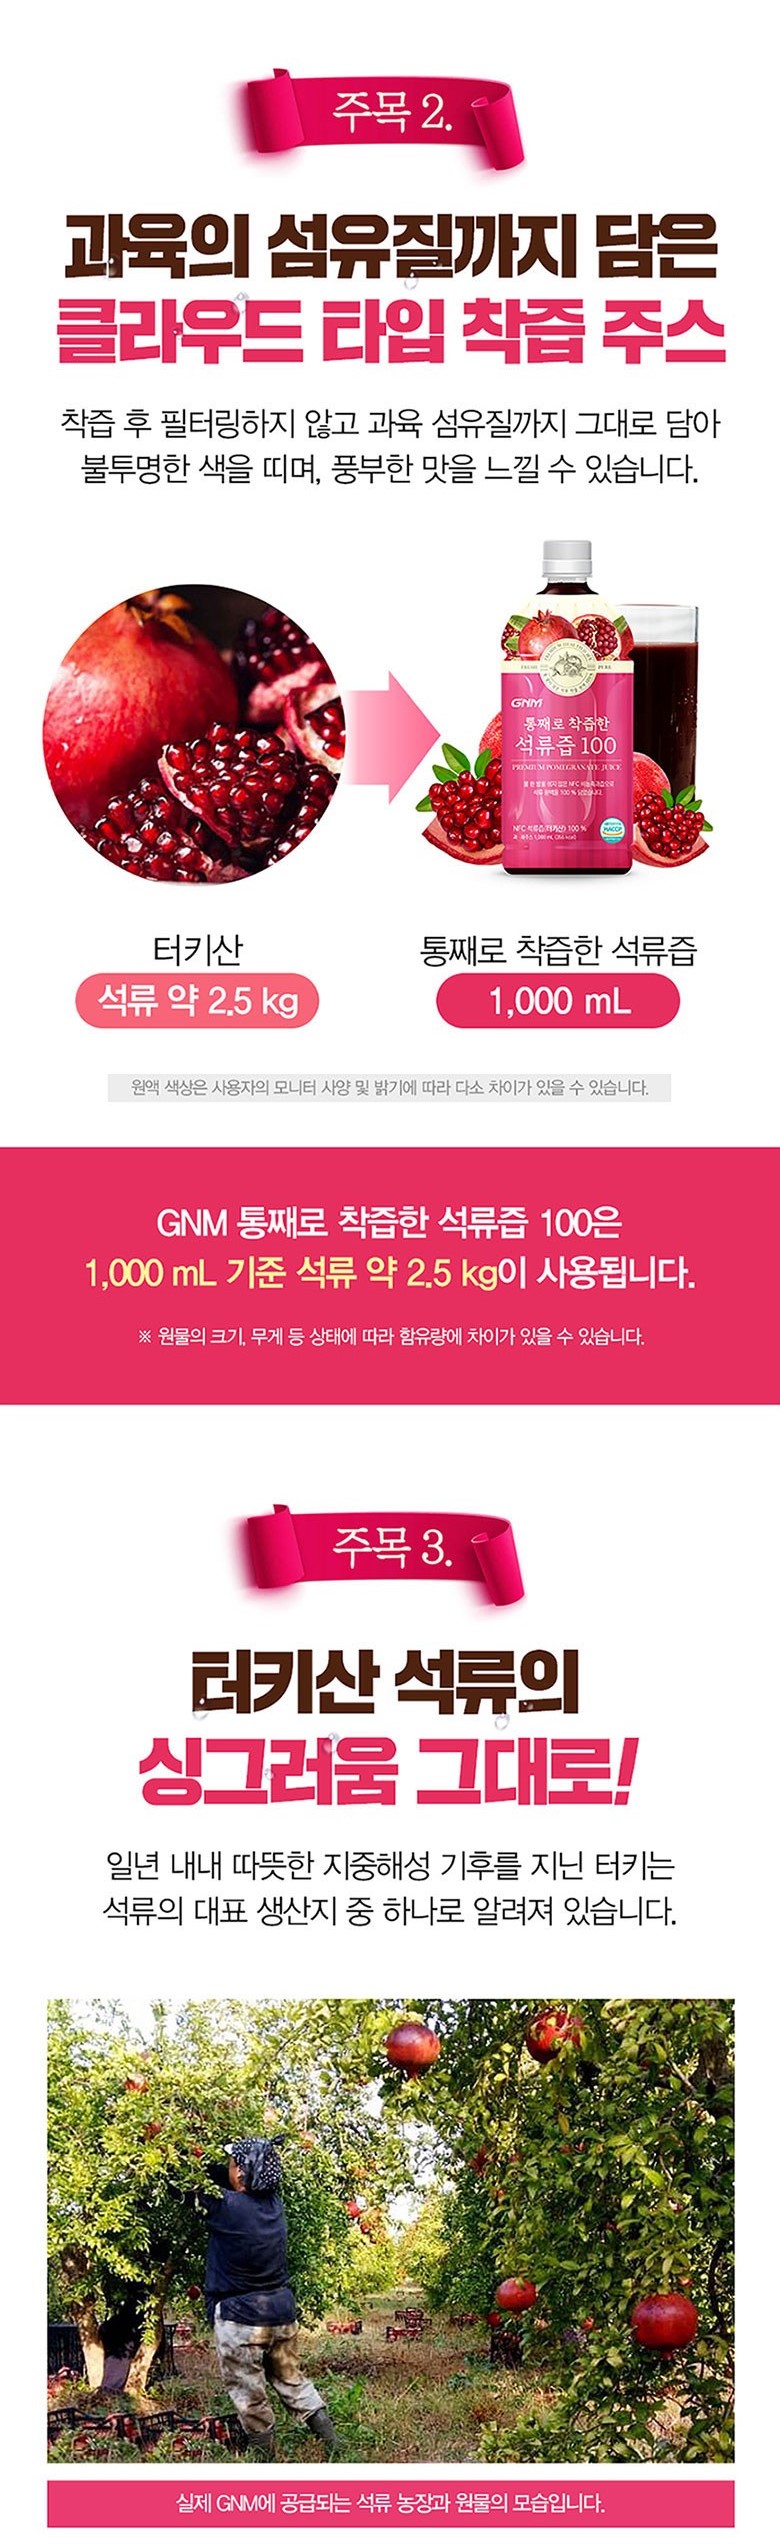 韓國食品-[GNM] 통째로 착즙한 석류즙 1000ml